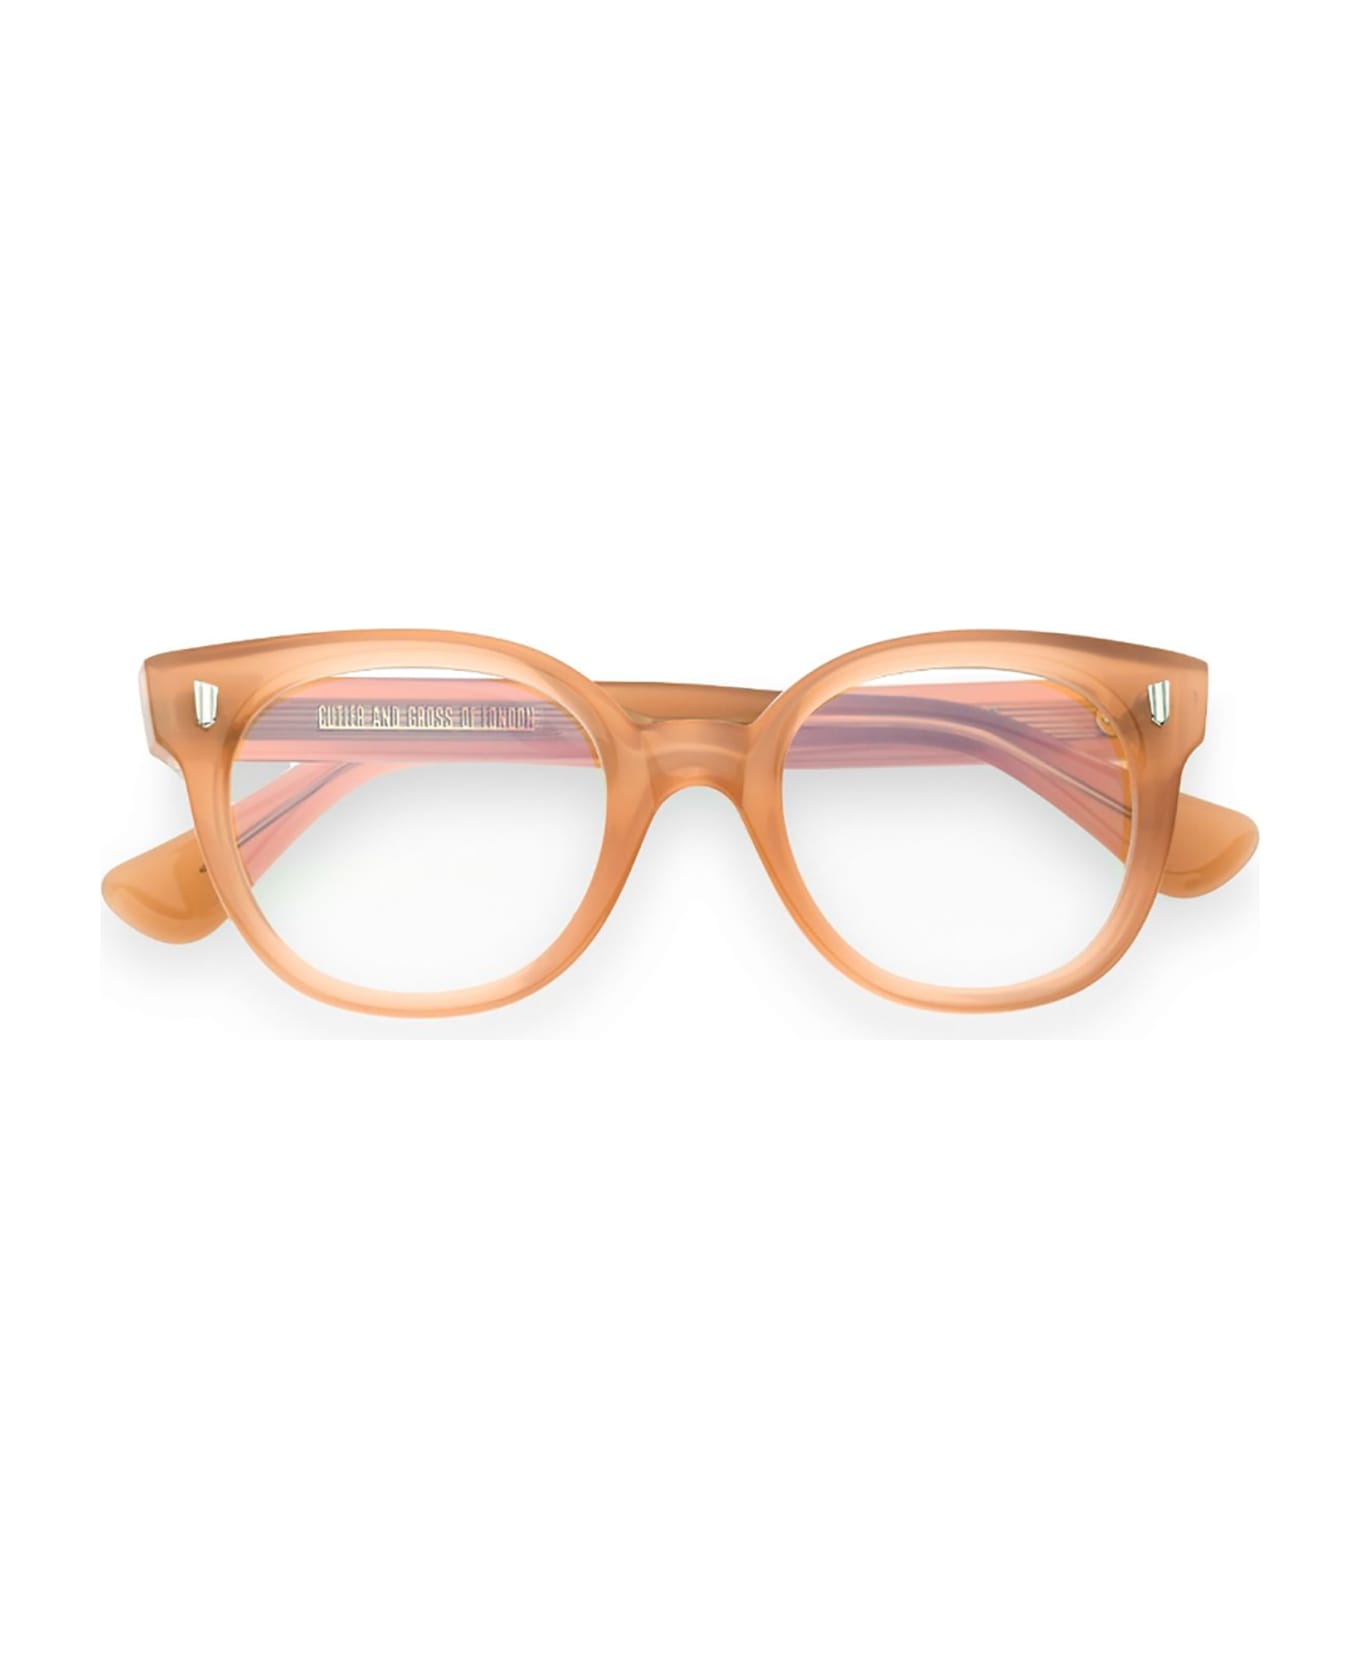 Cutler and Gross 9298 Eyewear - Opal Peach